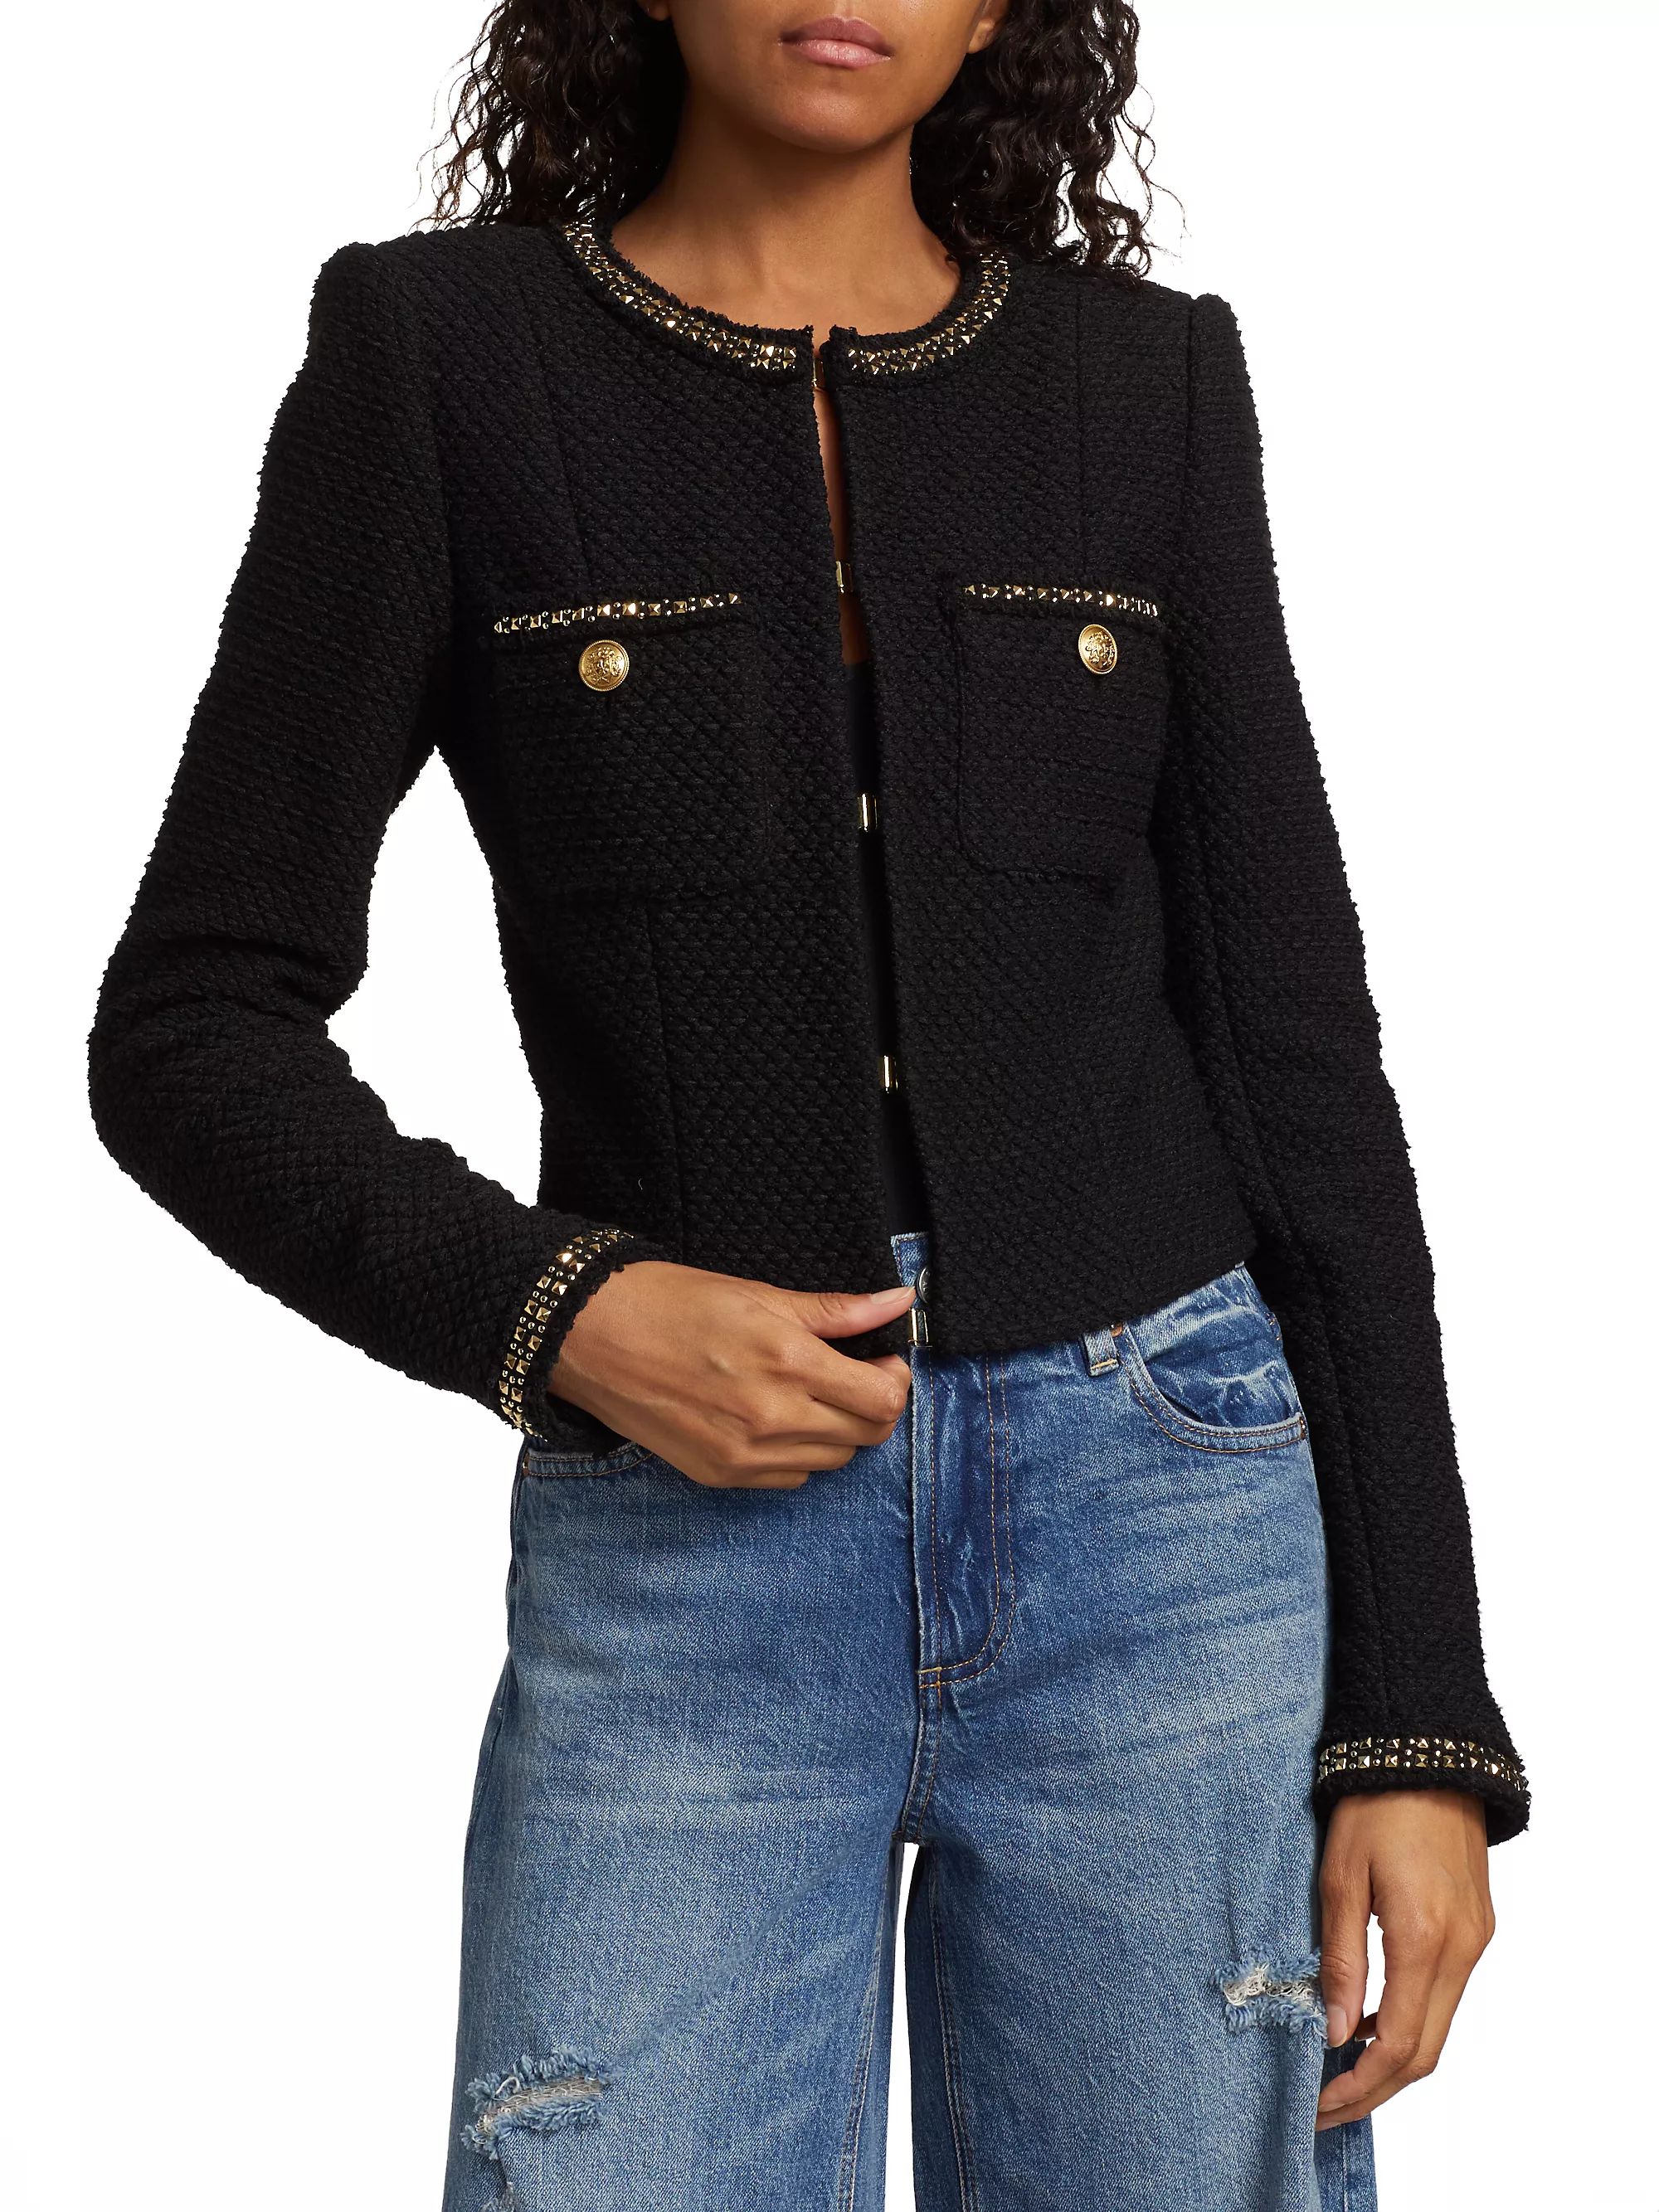 Coats & JacketsTweedAlice + OliviaShiloh Embellished Cotton Tweed Jacket$412.50$550Friends & Fami... | Saks Fifth Avenue